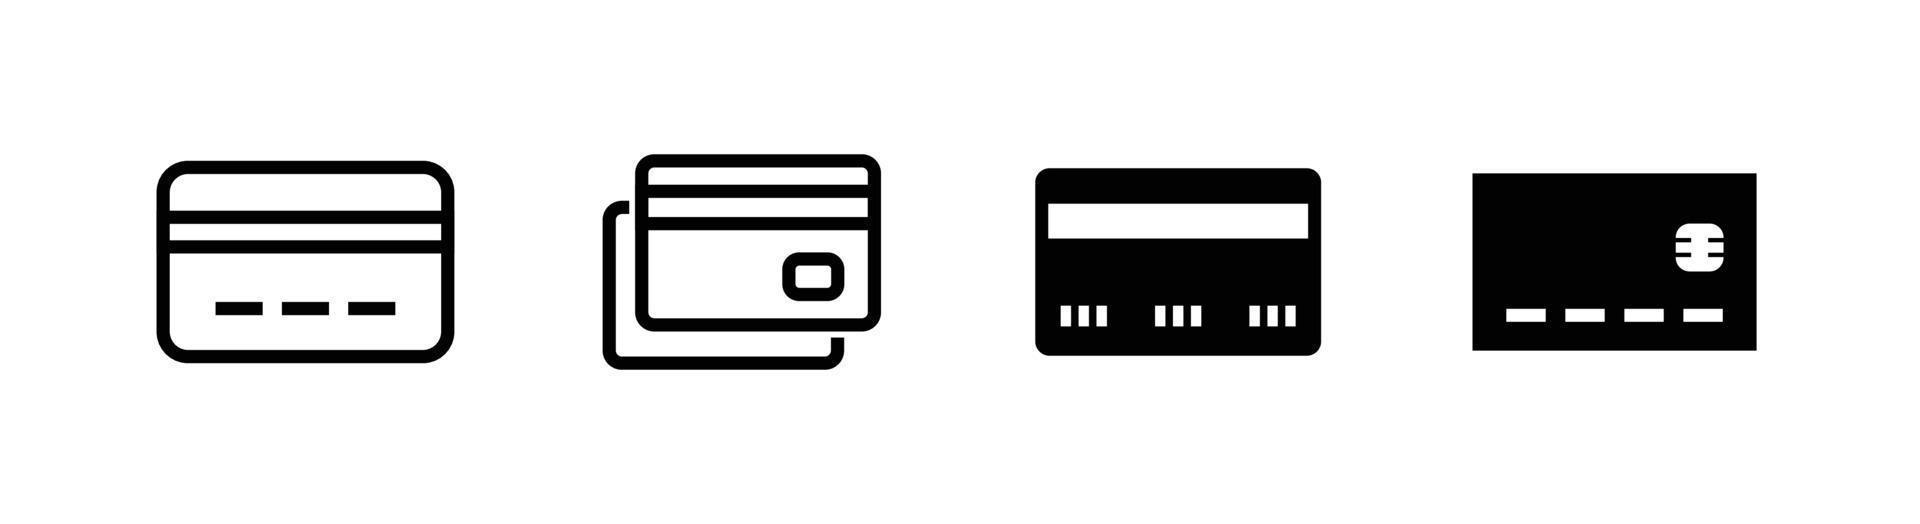 kaart pictogram ontwerpelement, clipart icon set gerelateerd aan creditcard of bankpas vector